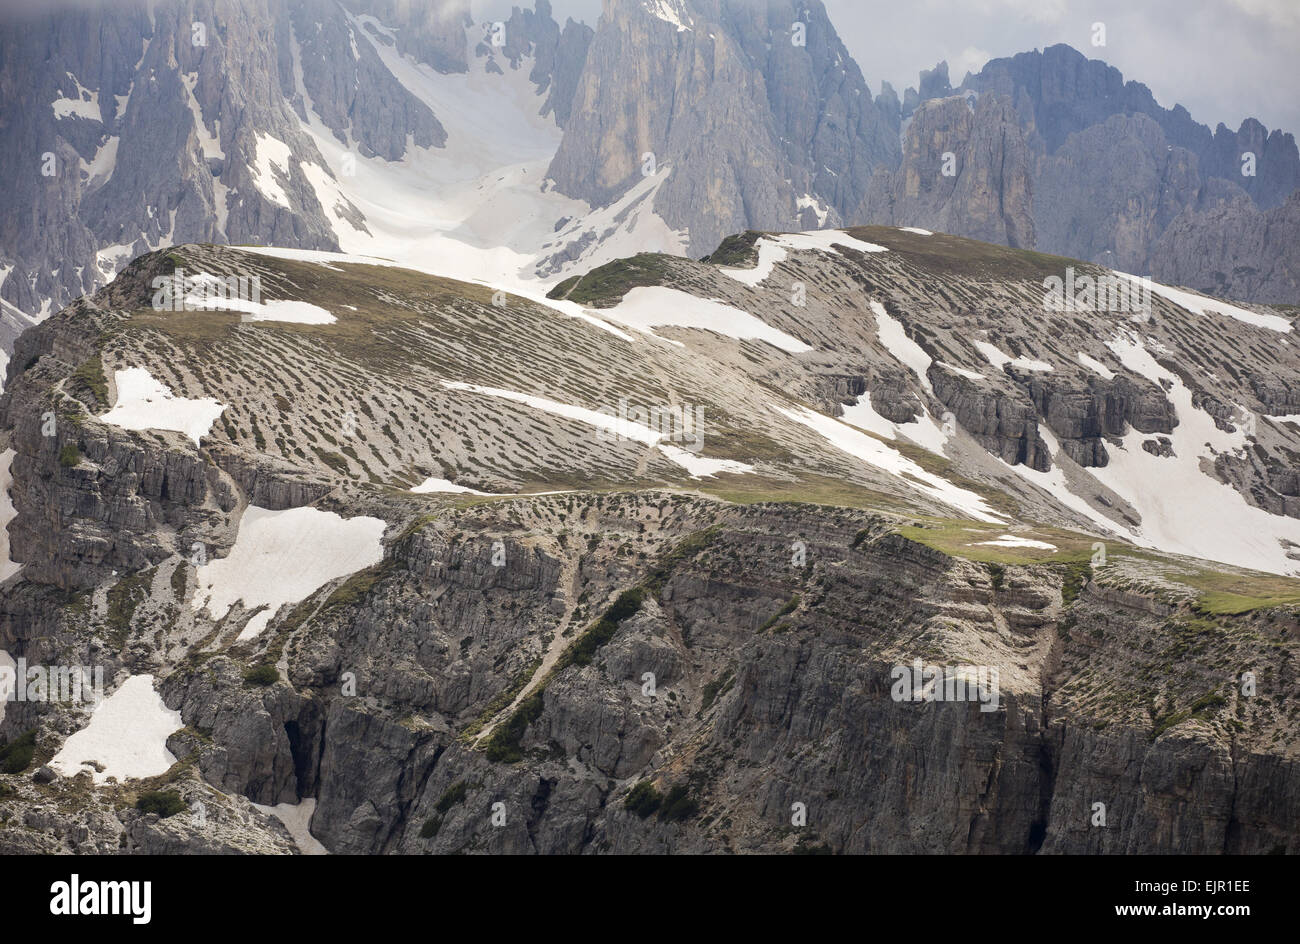 Bandes de pierre de gel dans la toundra d'altitude, Dolomites, Alpes italiennes, l'Italie, juin Banque D'Images